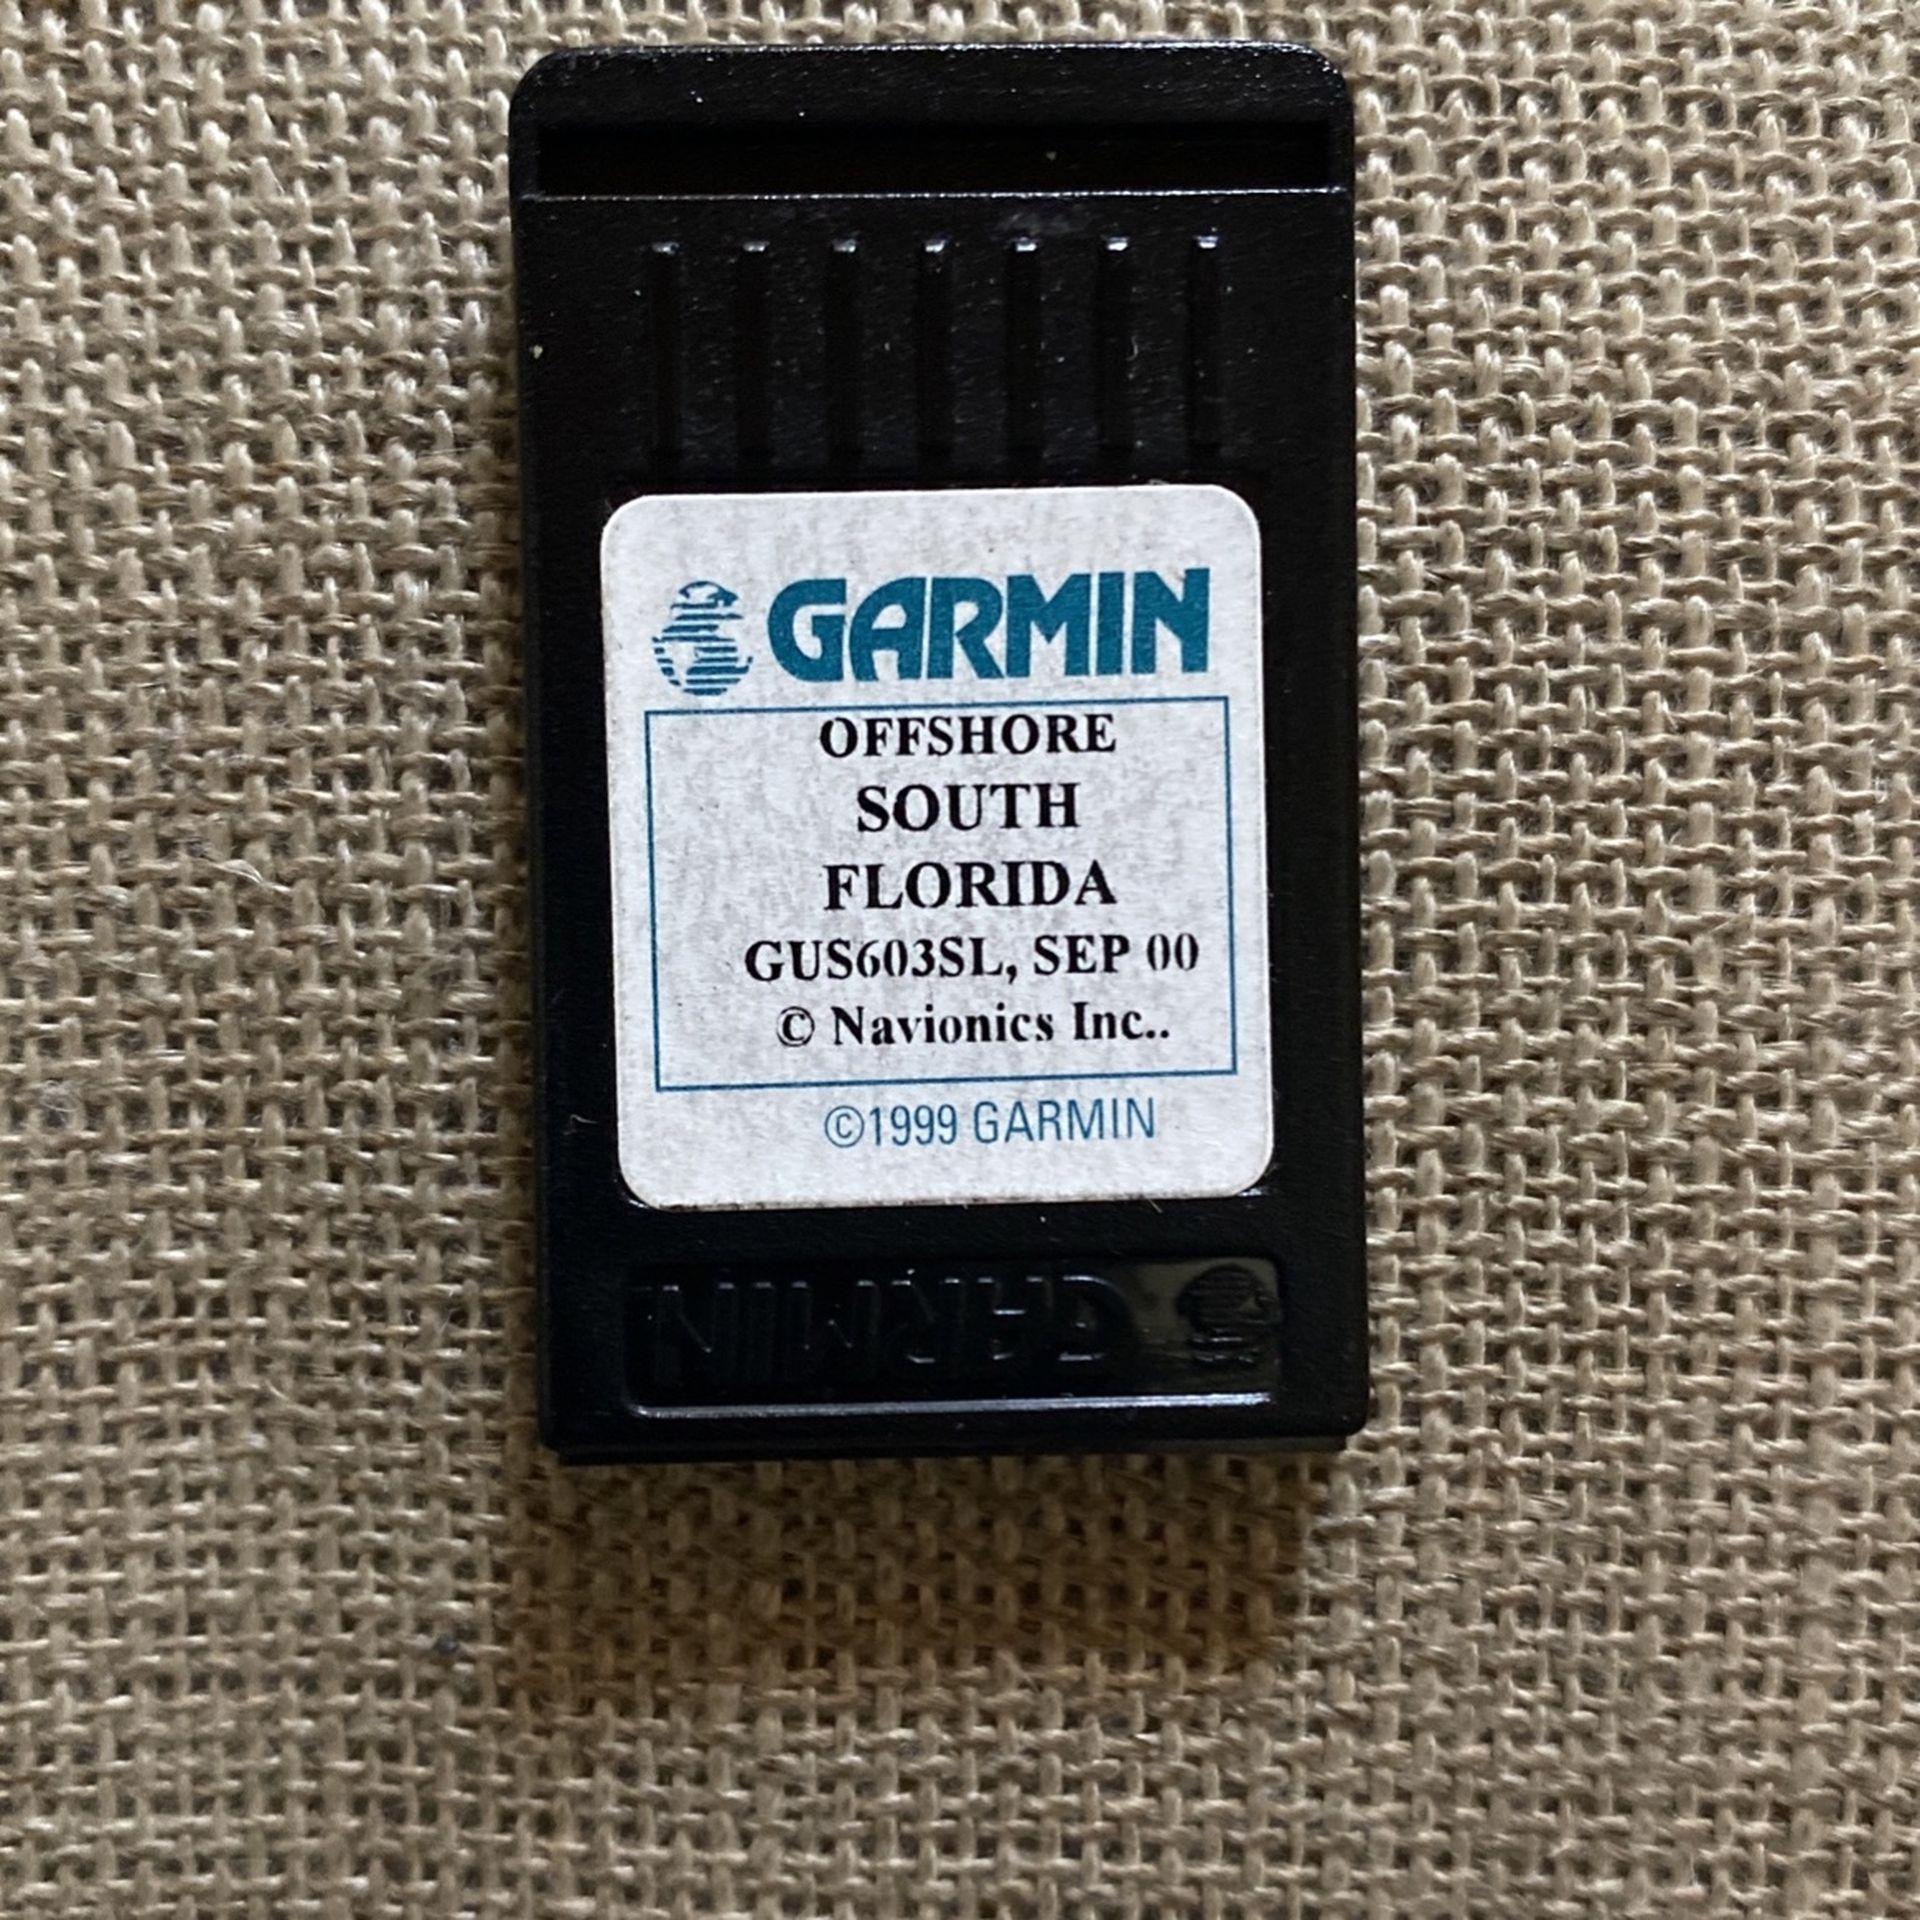 GARMIN GPS CHIP OFFSHORE SOUTH FLORIDA